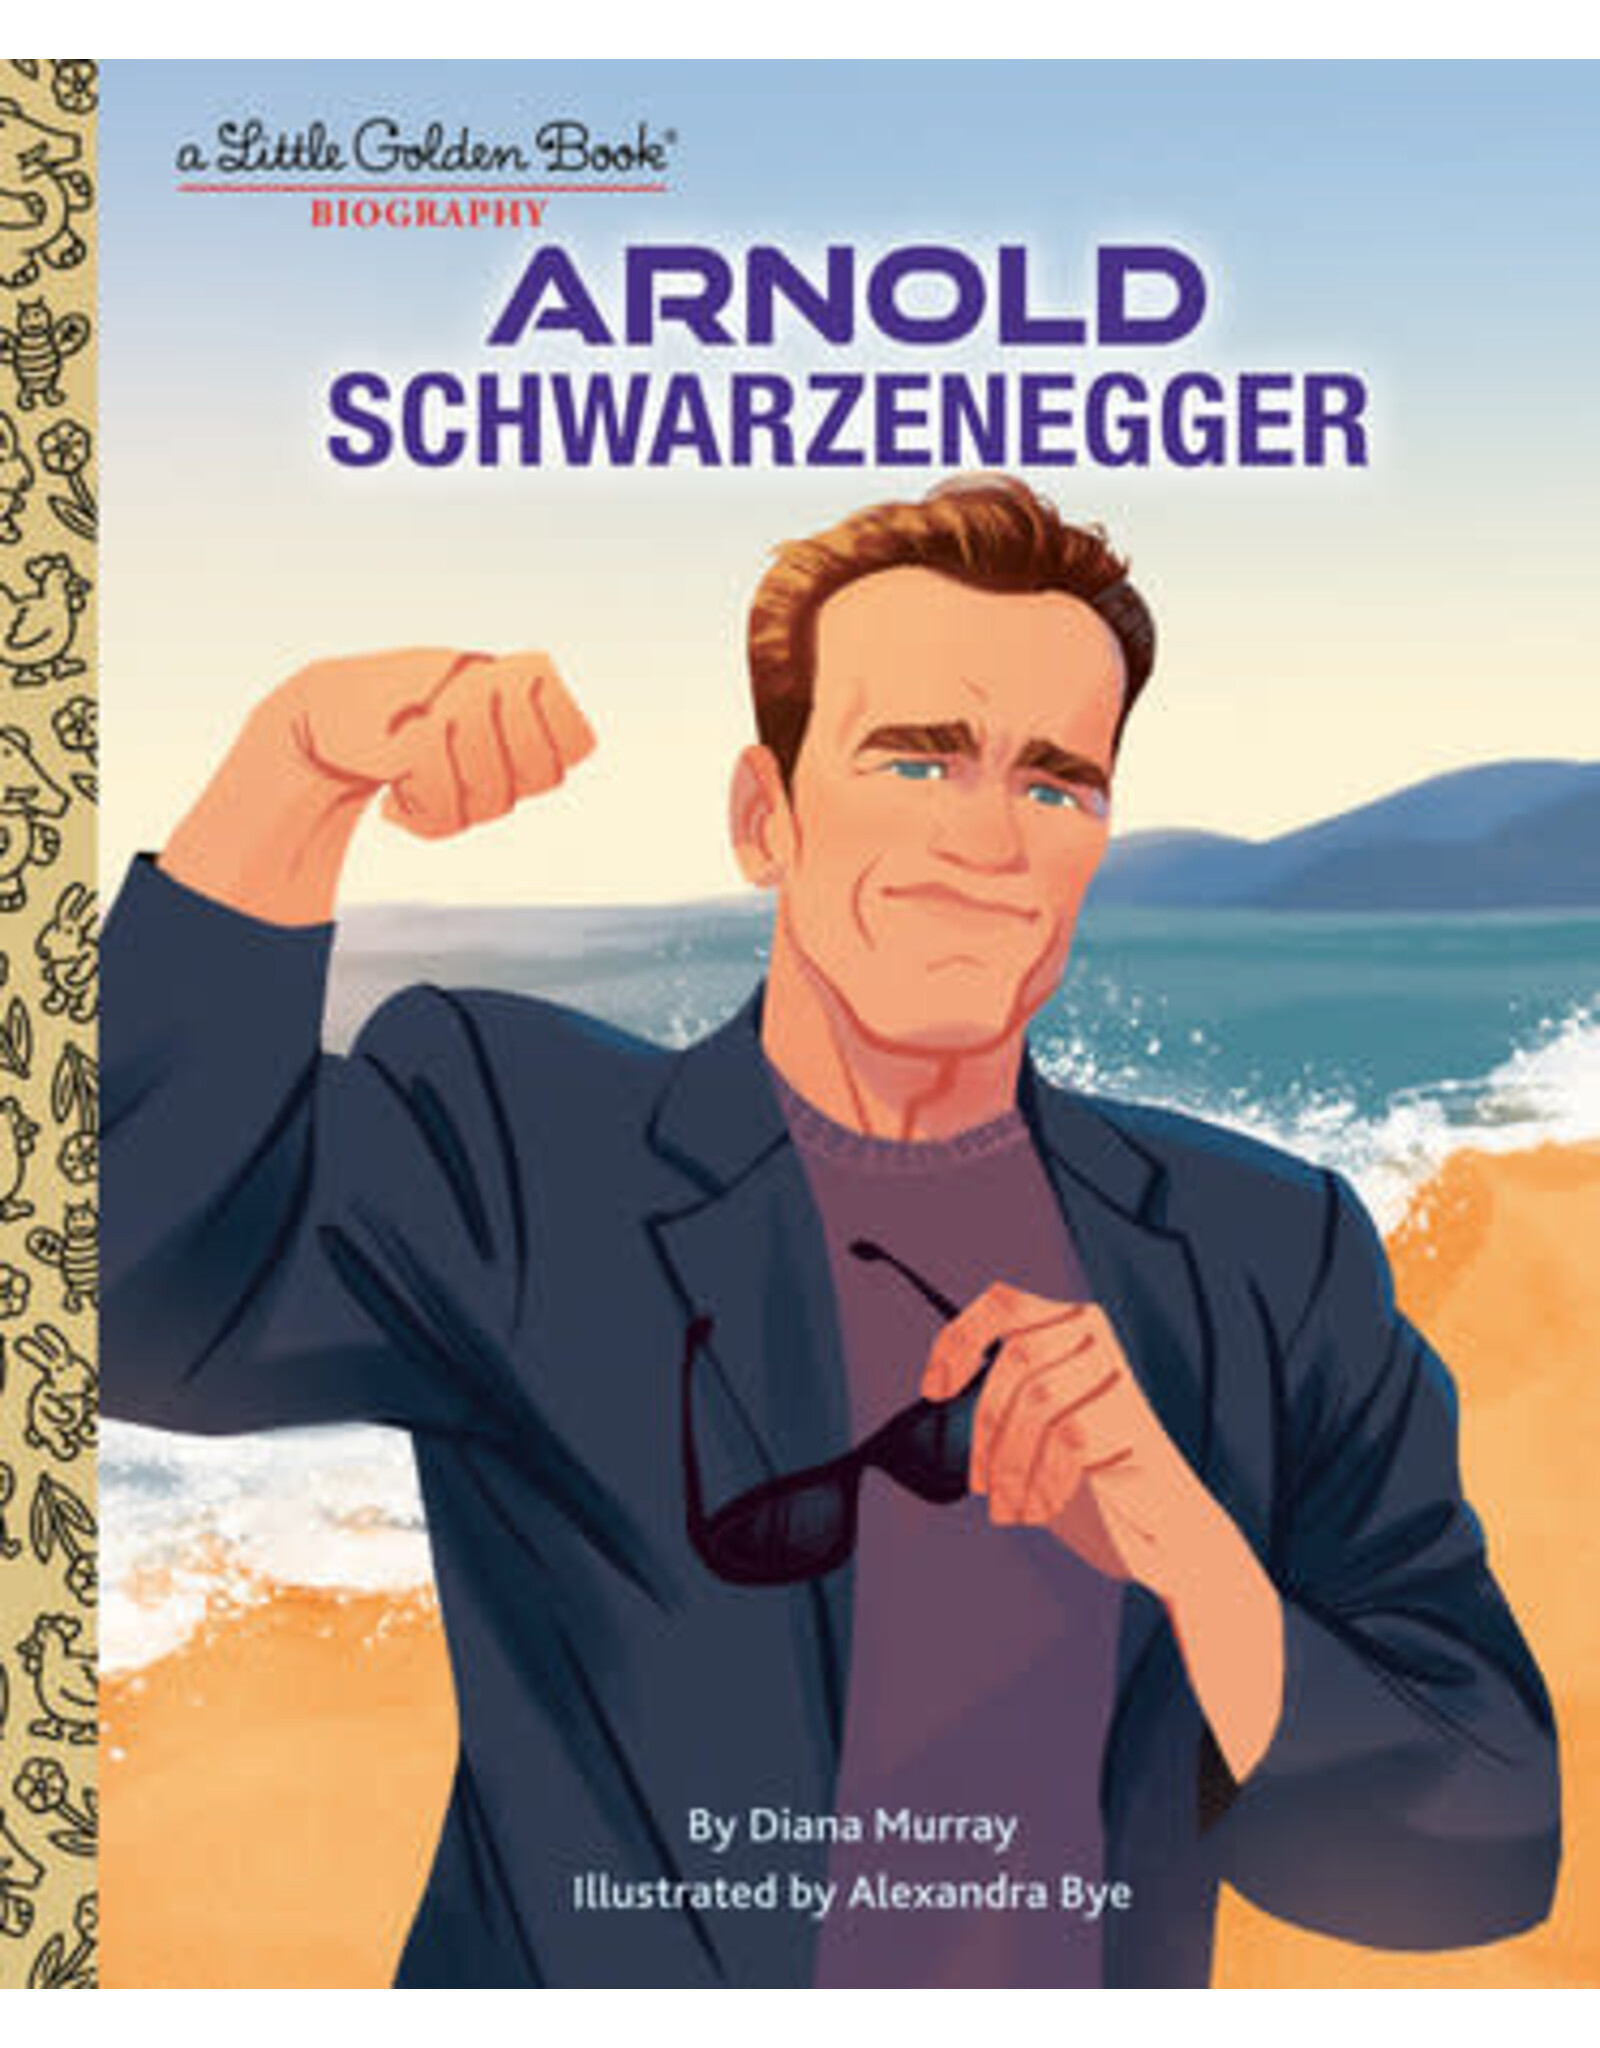 Little Golden Books Arnold Schwarzenegger: A Little Golden Book Biography